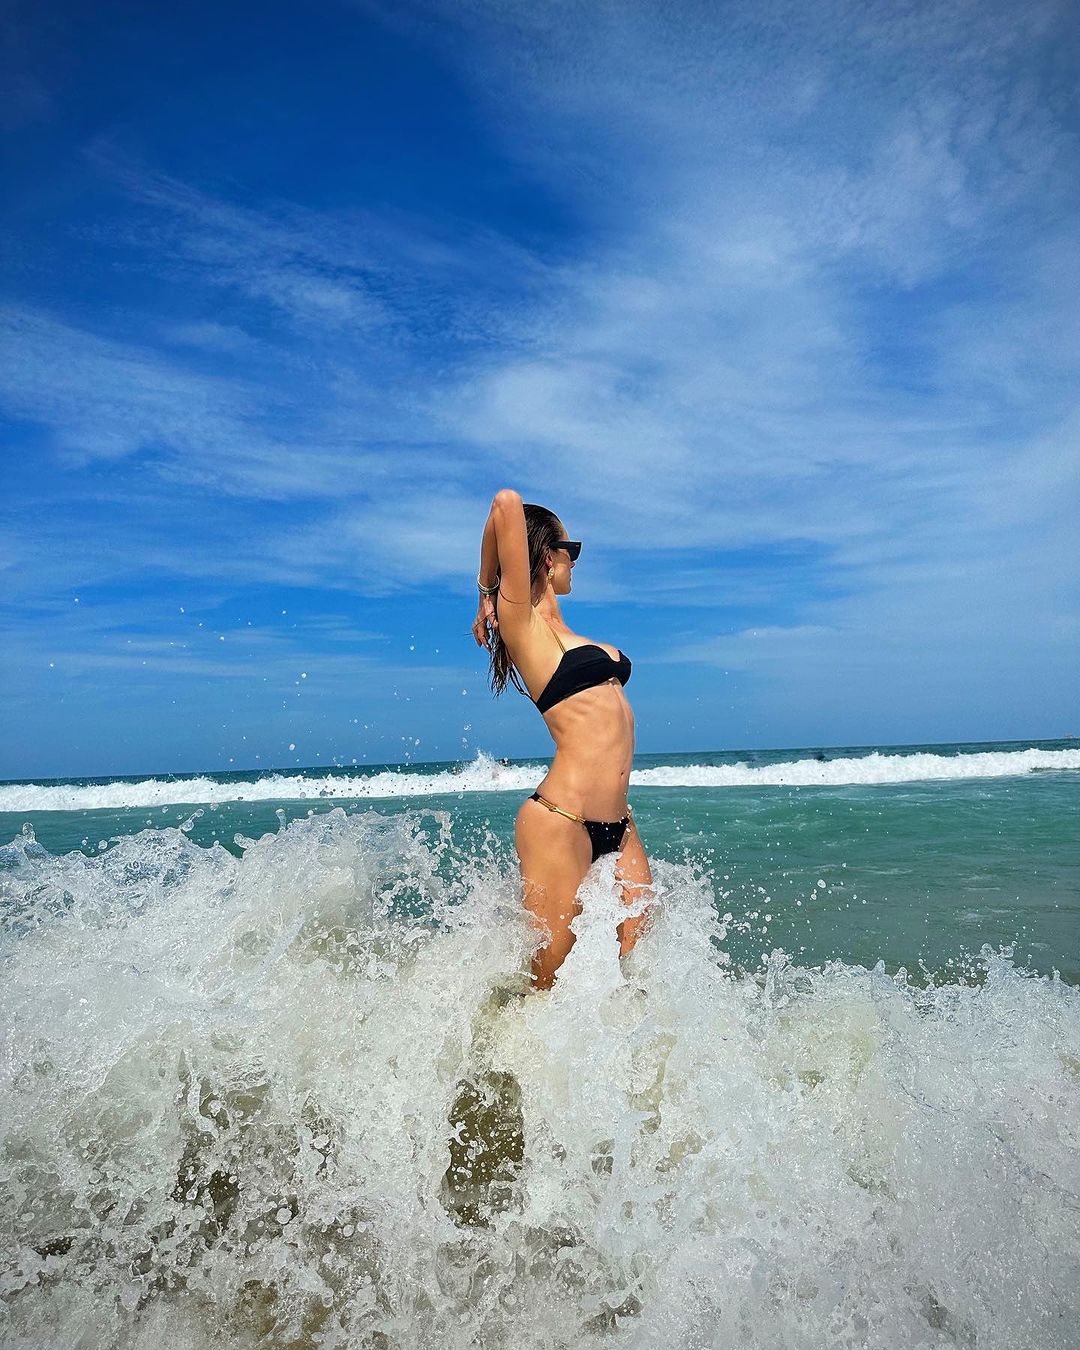 Alessandra Ambrosio Gets Her Vitamin Sea In! - Photo 15